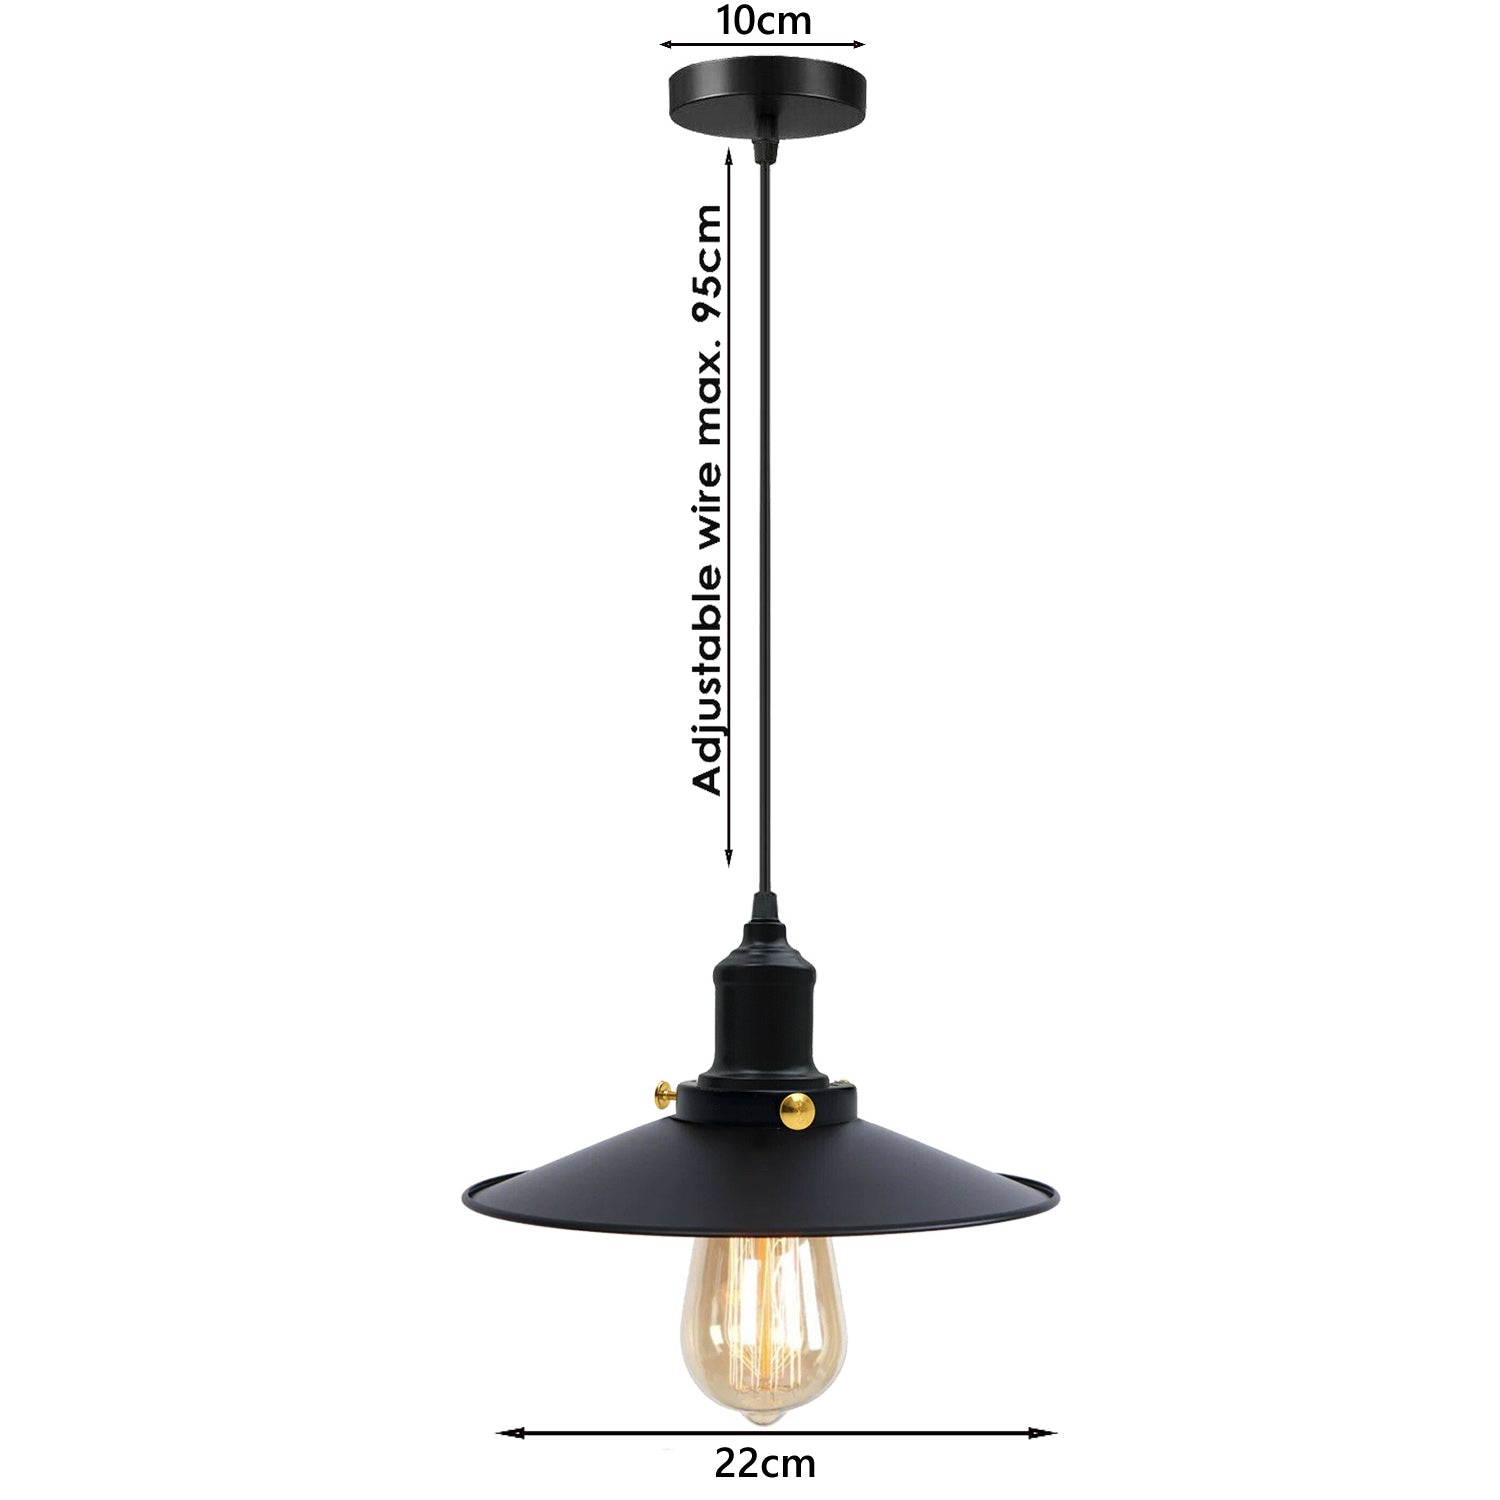 Schwarz-Vintage Deckenlampe Leuchte Pendelleuchte Retro Industrie Design – Hängelampe